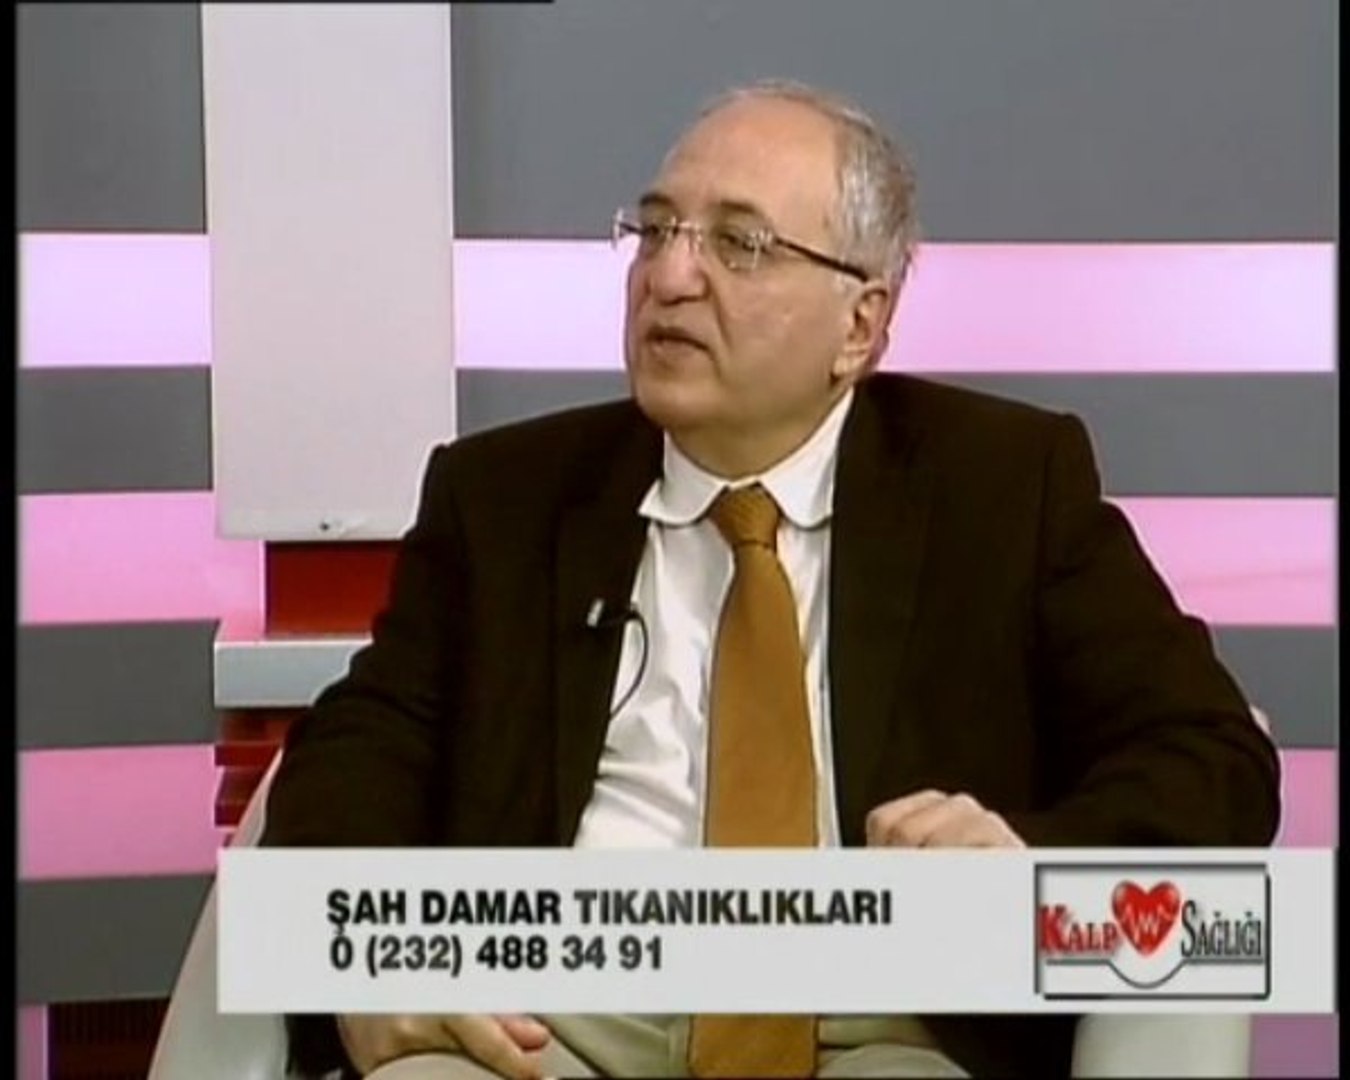 ŞAH DAMAR TIKANIKLIKLARI-ESİN SAYIN - PROF.DR.ÖZTEKİN OTO - Dailymotion  Video